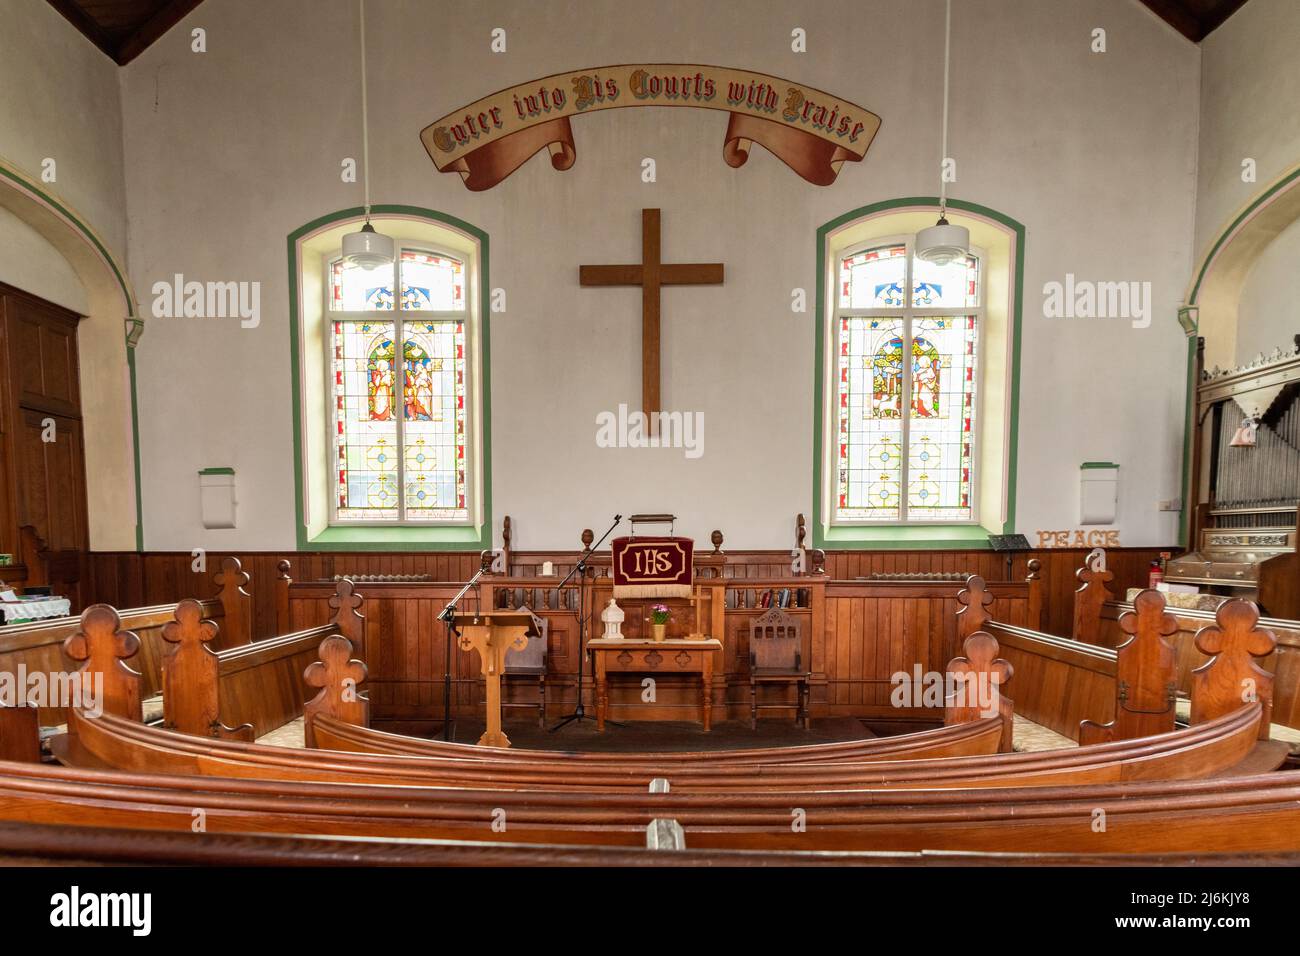 West Burton Methodist Church interior, North Yorkshire, Inghilterra, Regno Unito Foto Stock